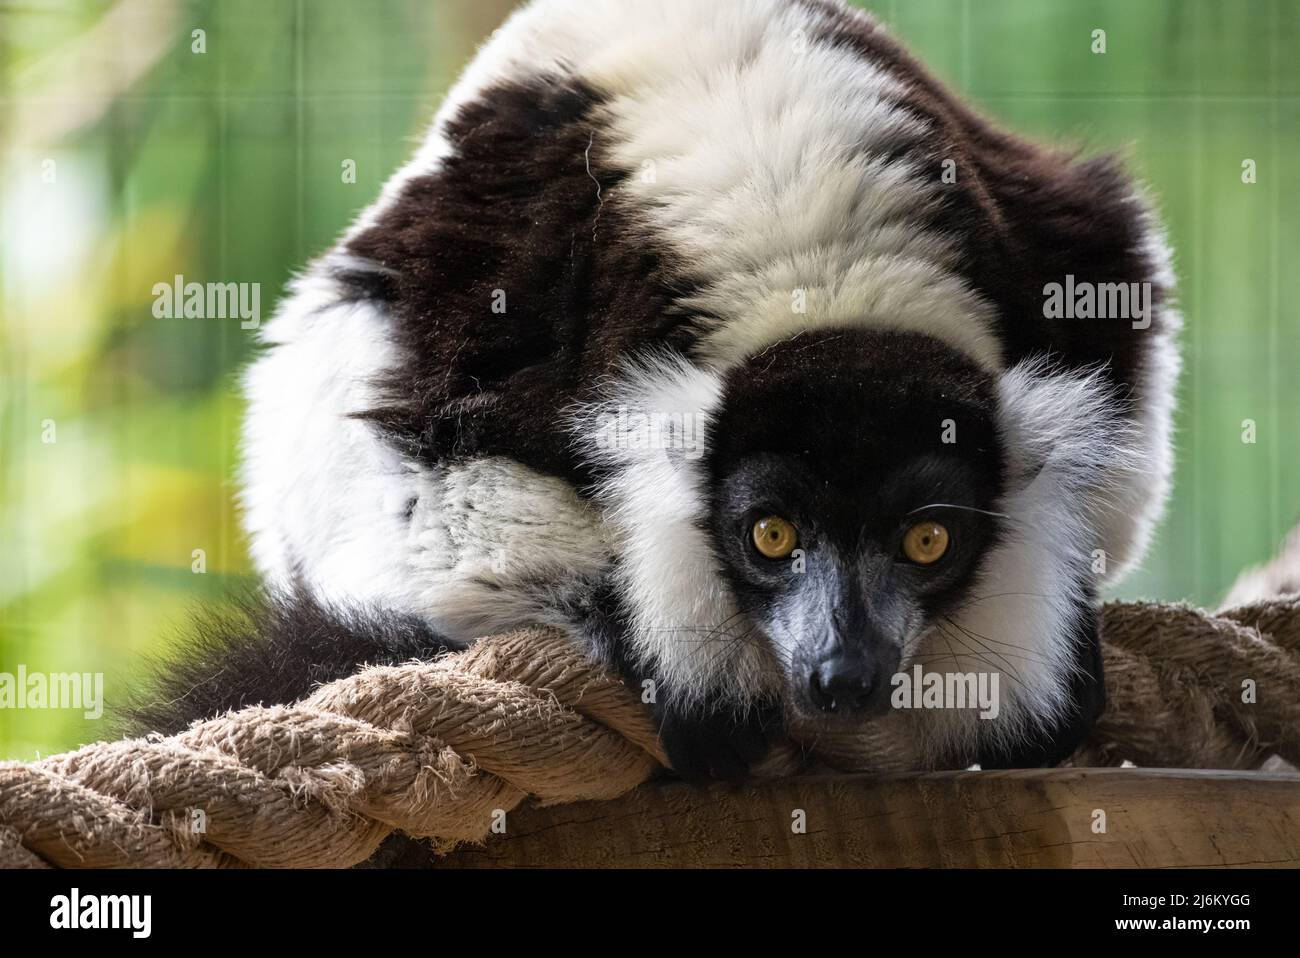 Schwarz-weißer, geraffter Lemur (Varecia variegata), eine vom Aussterben bedrohte Art aus Madagaskar, auf der St. Augustine Alligator Farm in Florida. (USA) Stockfoto